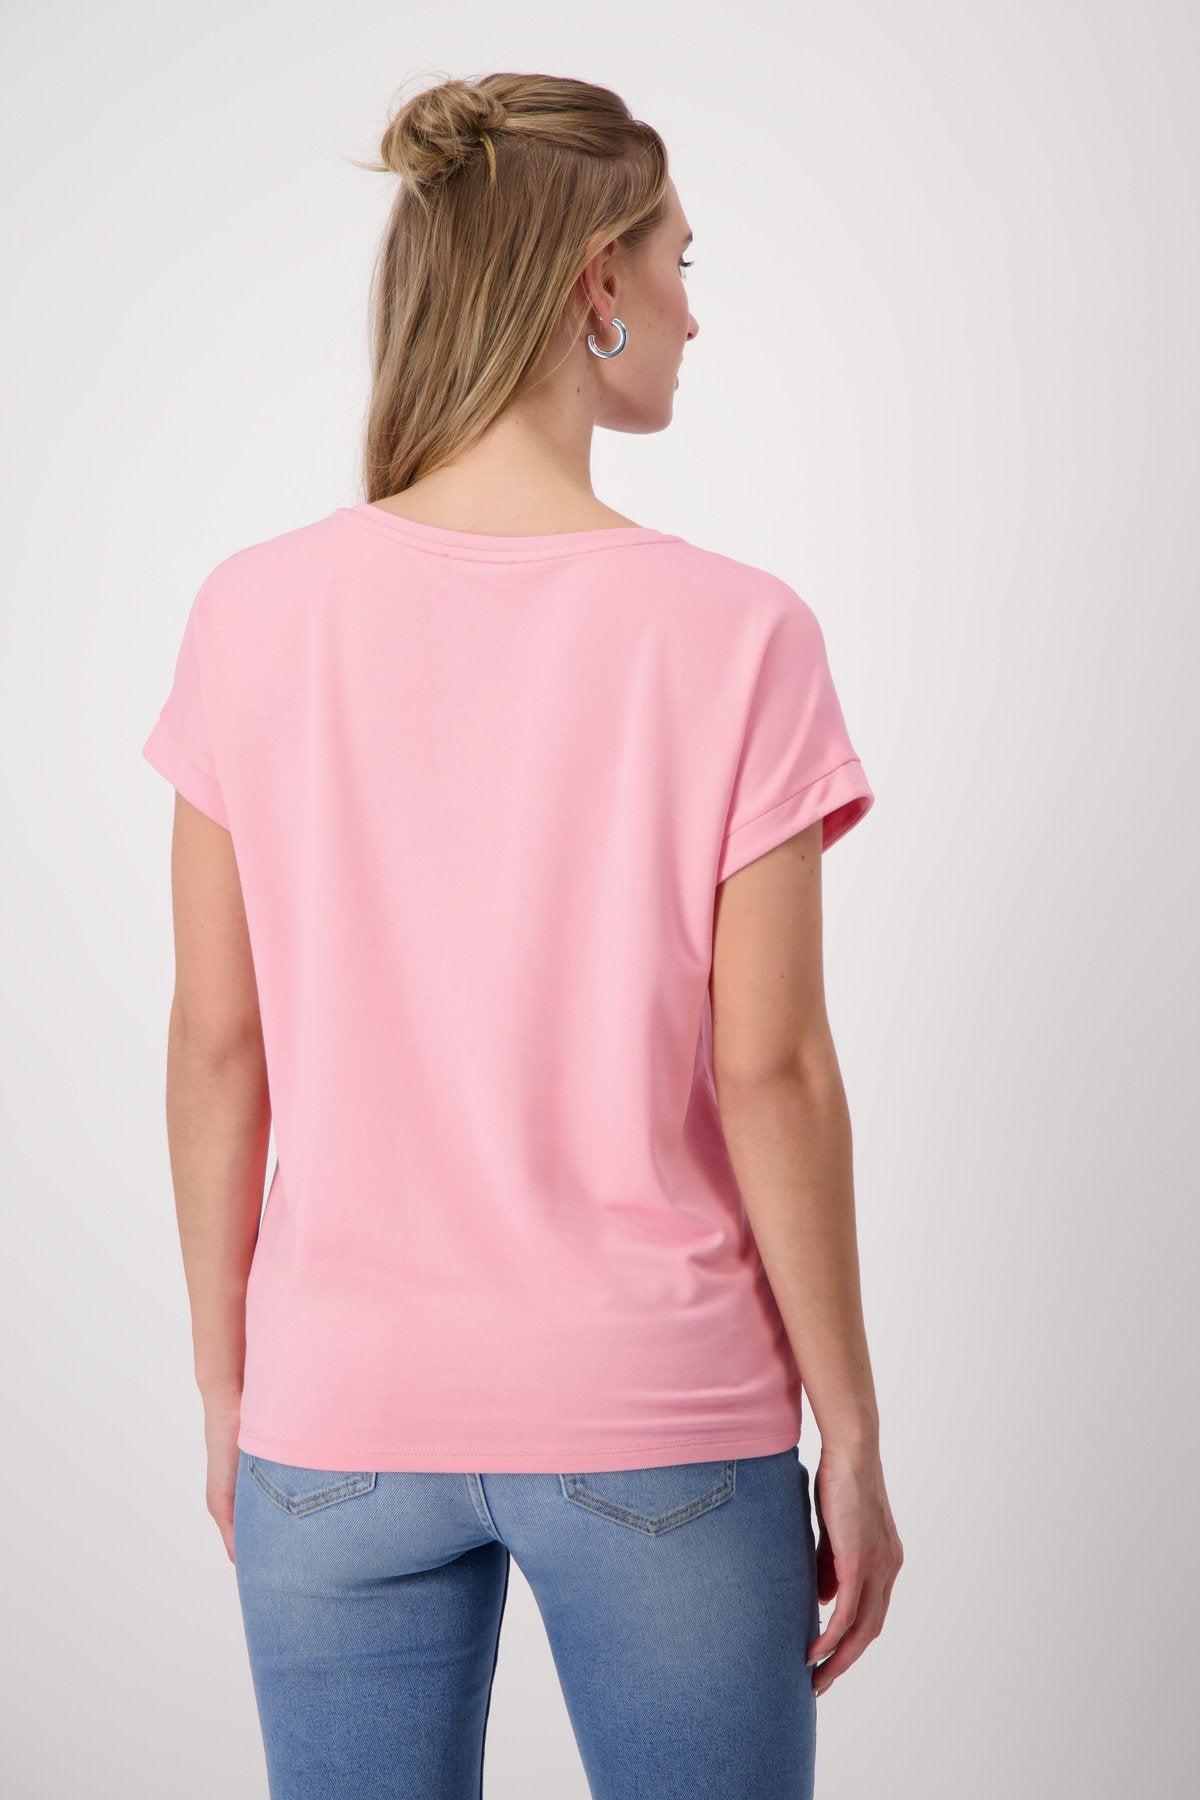 T-Shirt (Pink Smoothie)